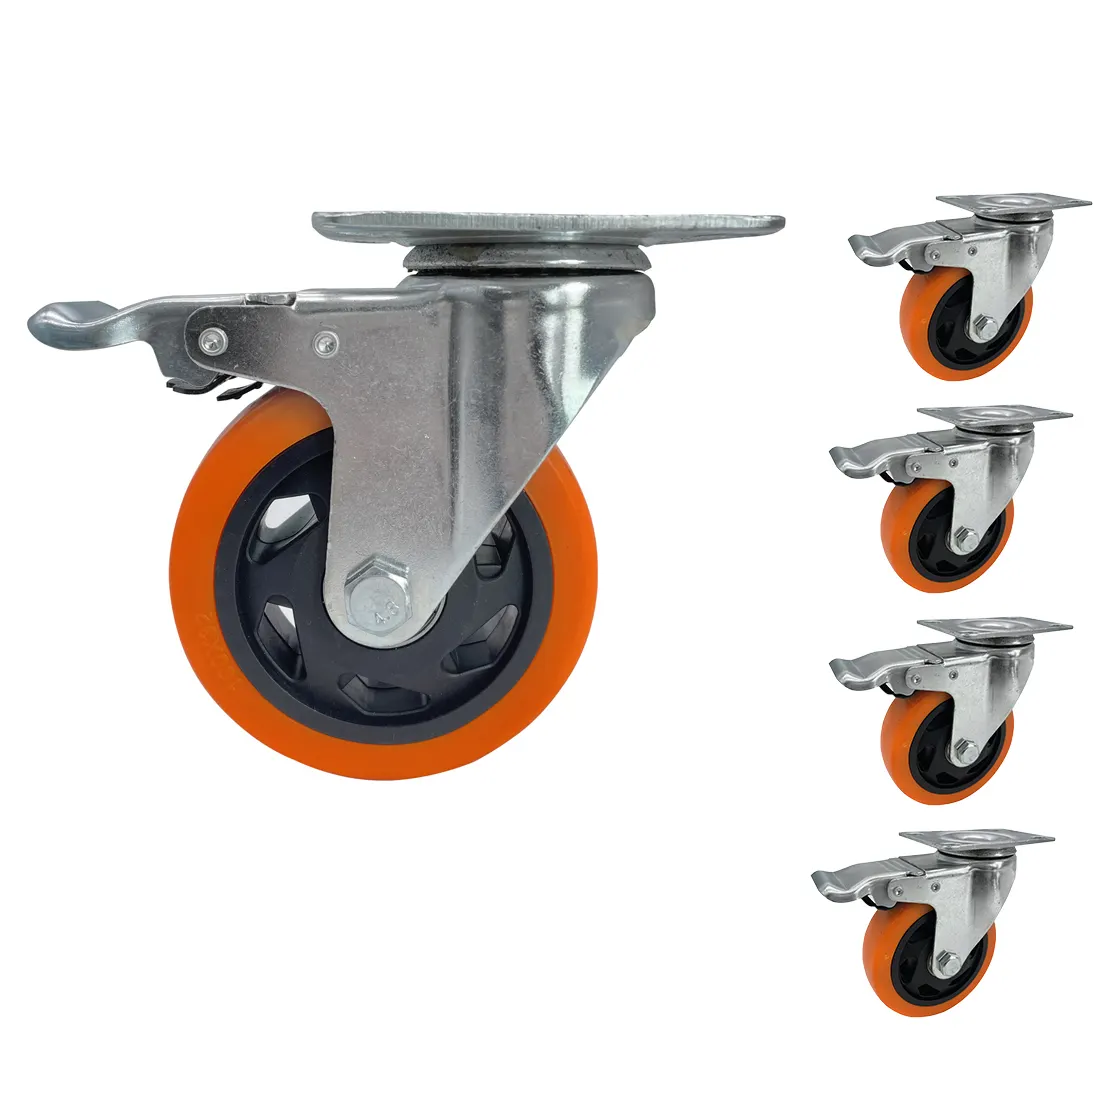 Rodas de carrinho resistente direta de fábrica, rodas de roda de pvc, poliuretano, laranja, rodas industriais